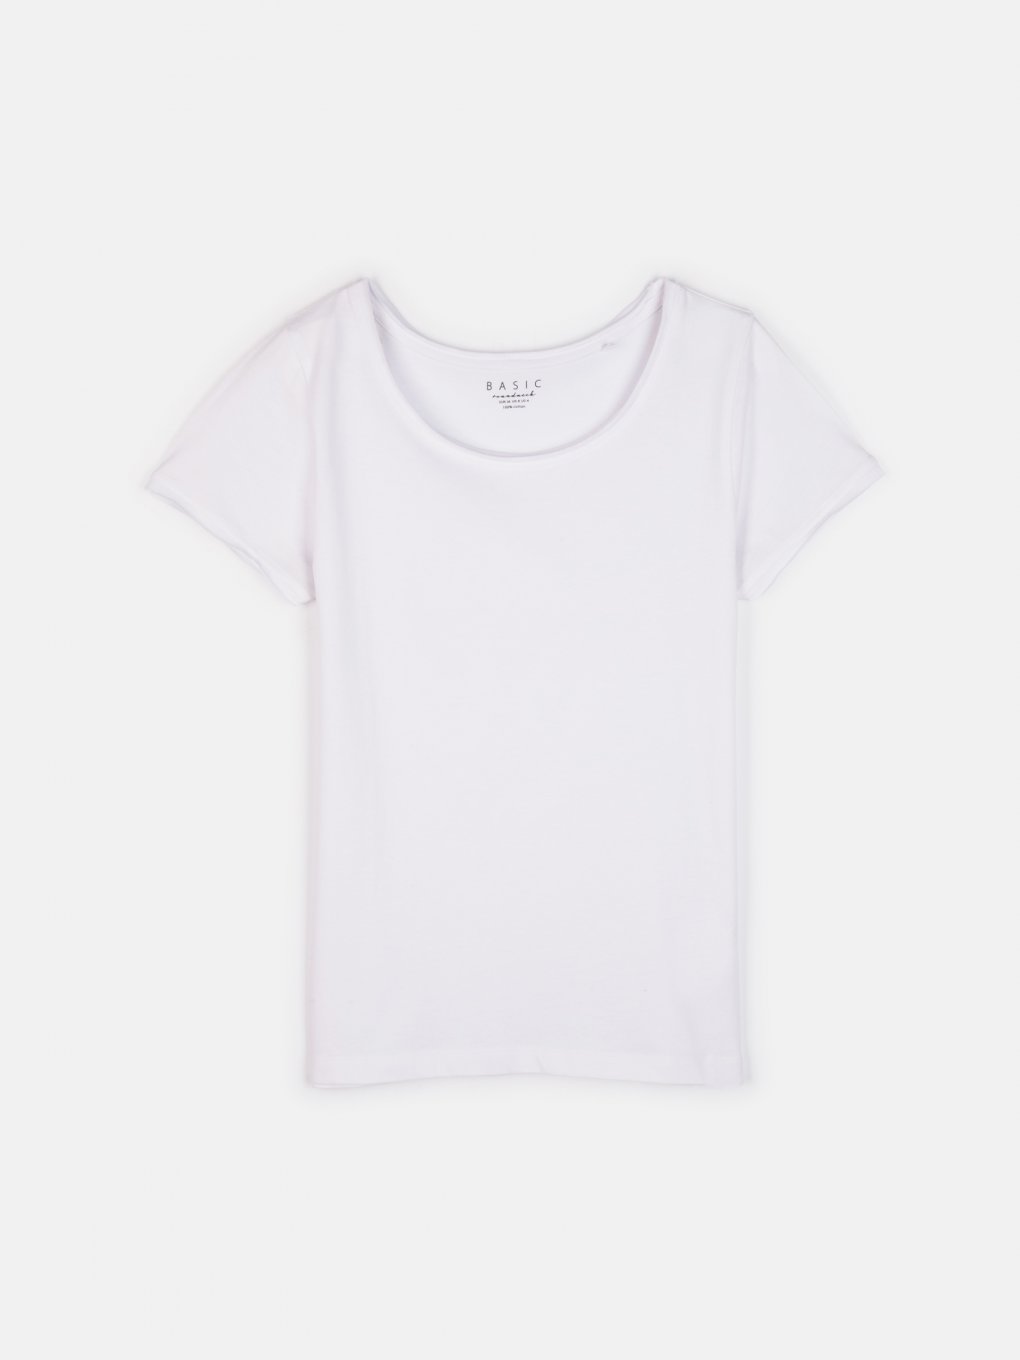 Basic short sleeve t-shirt with raw edges